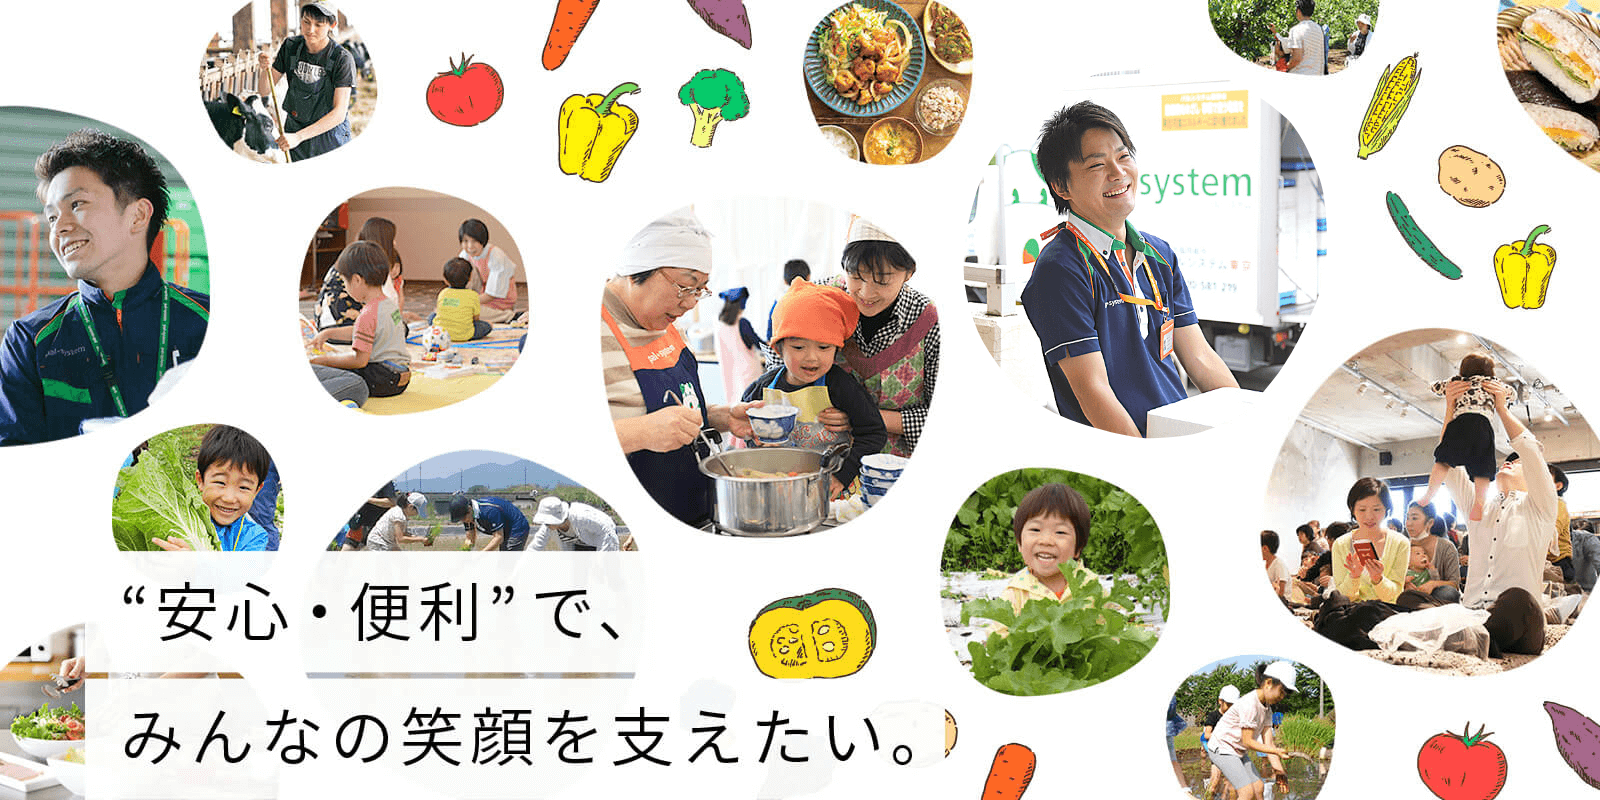 “安心・便利”で、みんなの笑顔を支えたい。 | 生活協同組合 パルシステム東京